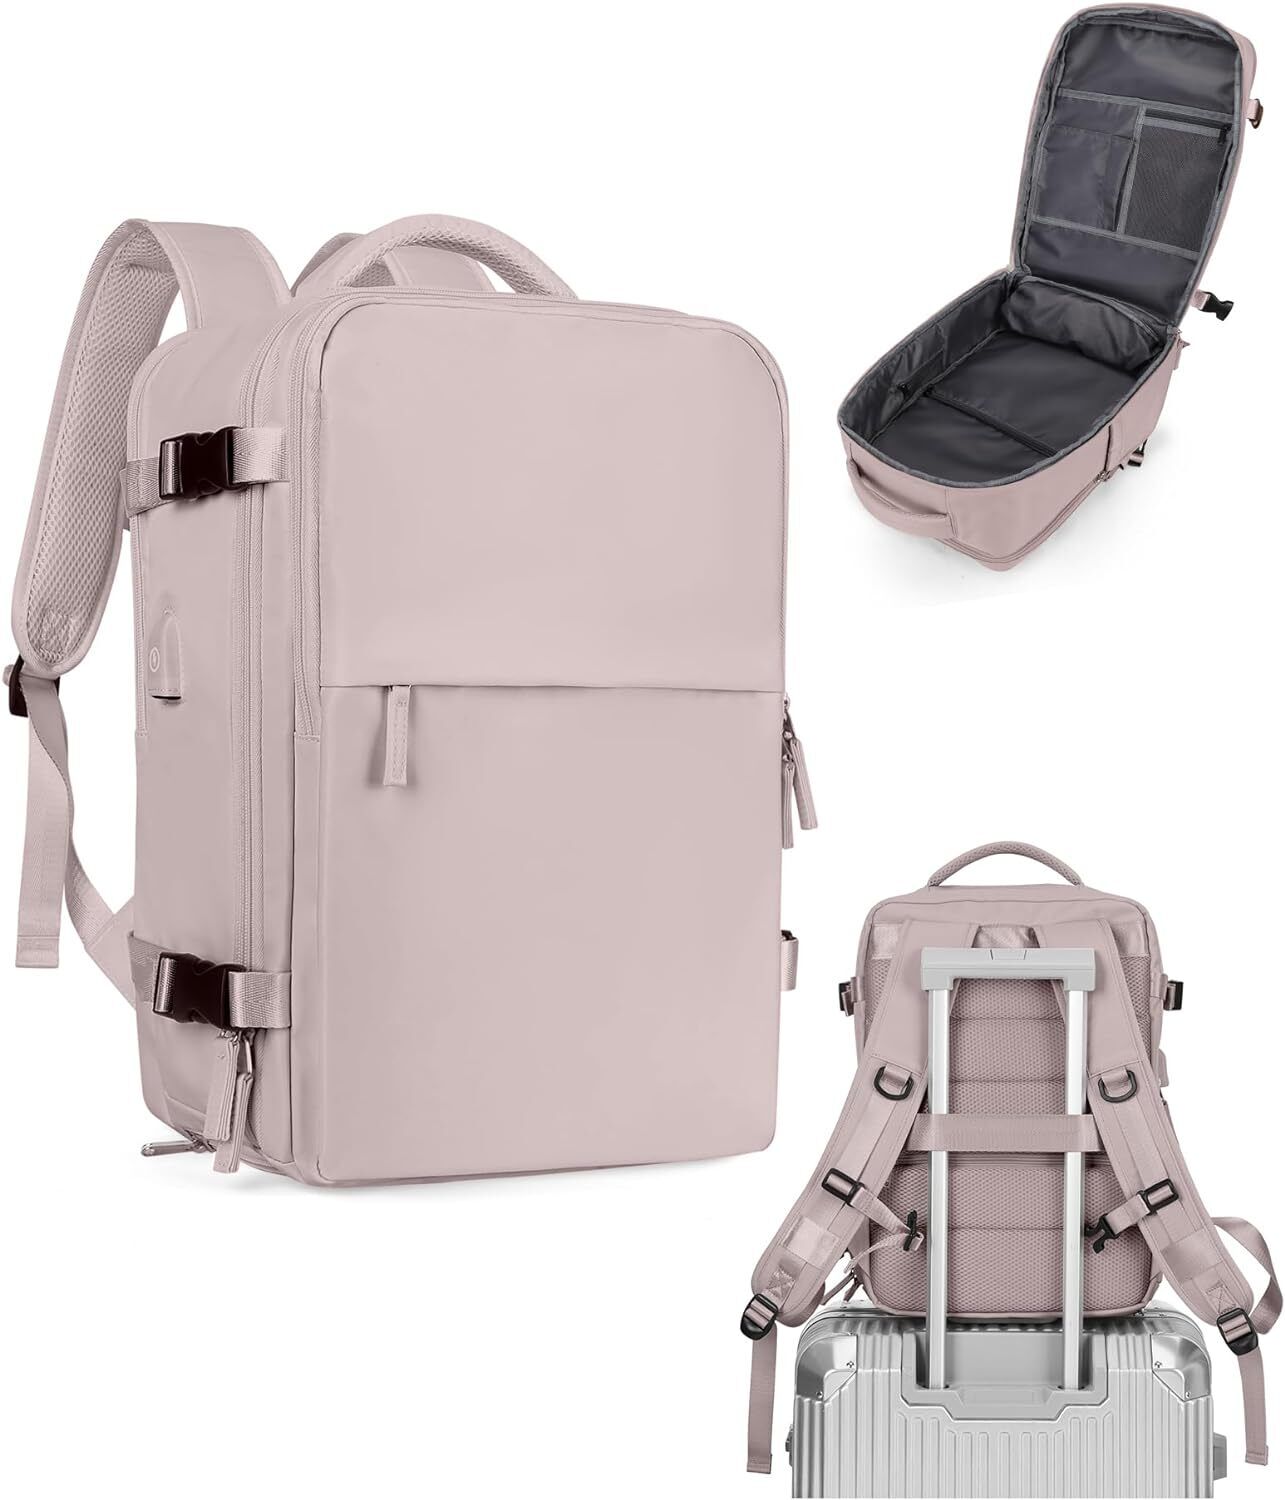 UPPACK Travel Backpack for Women Men Bag Large, A-pink Purple 